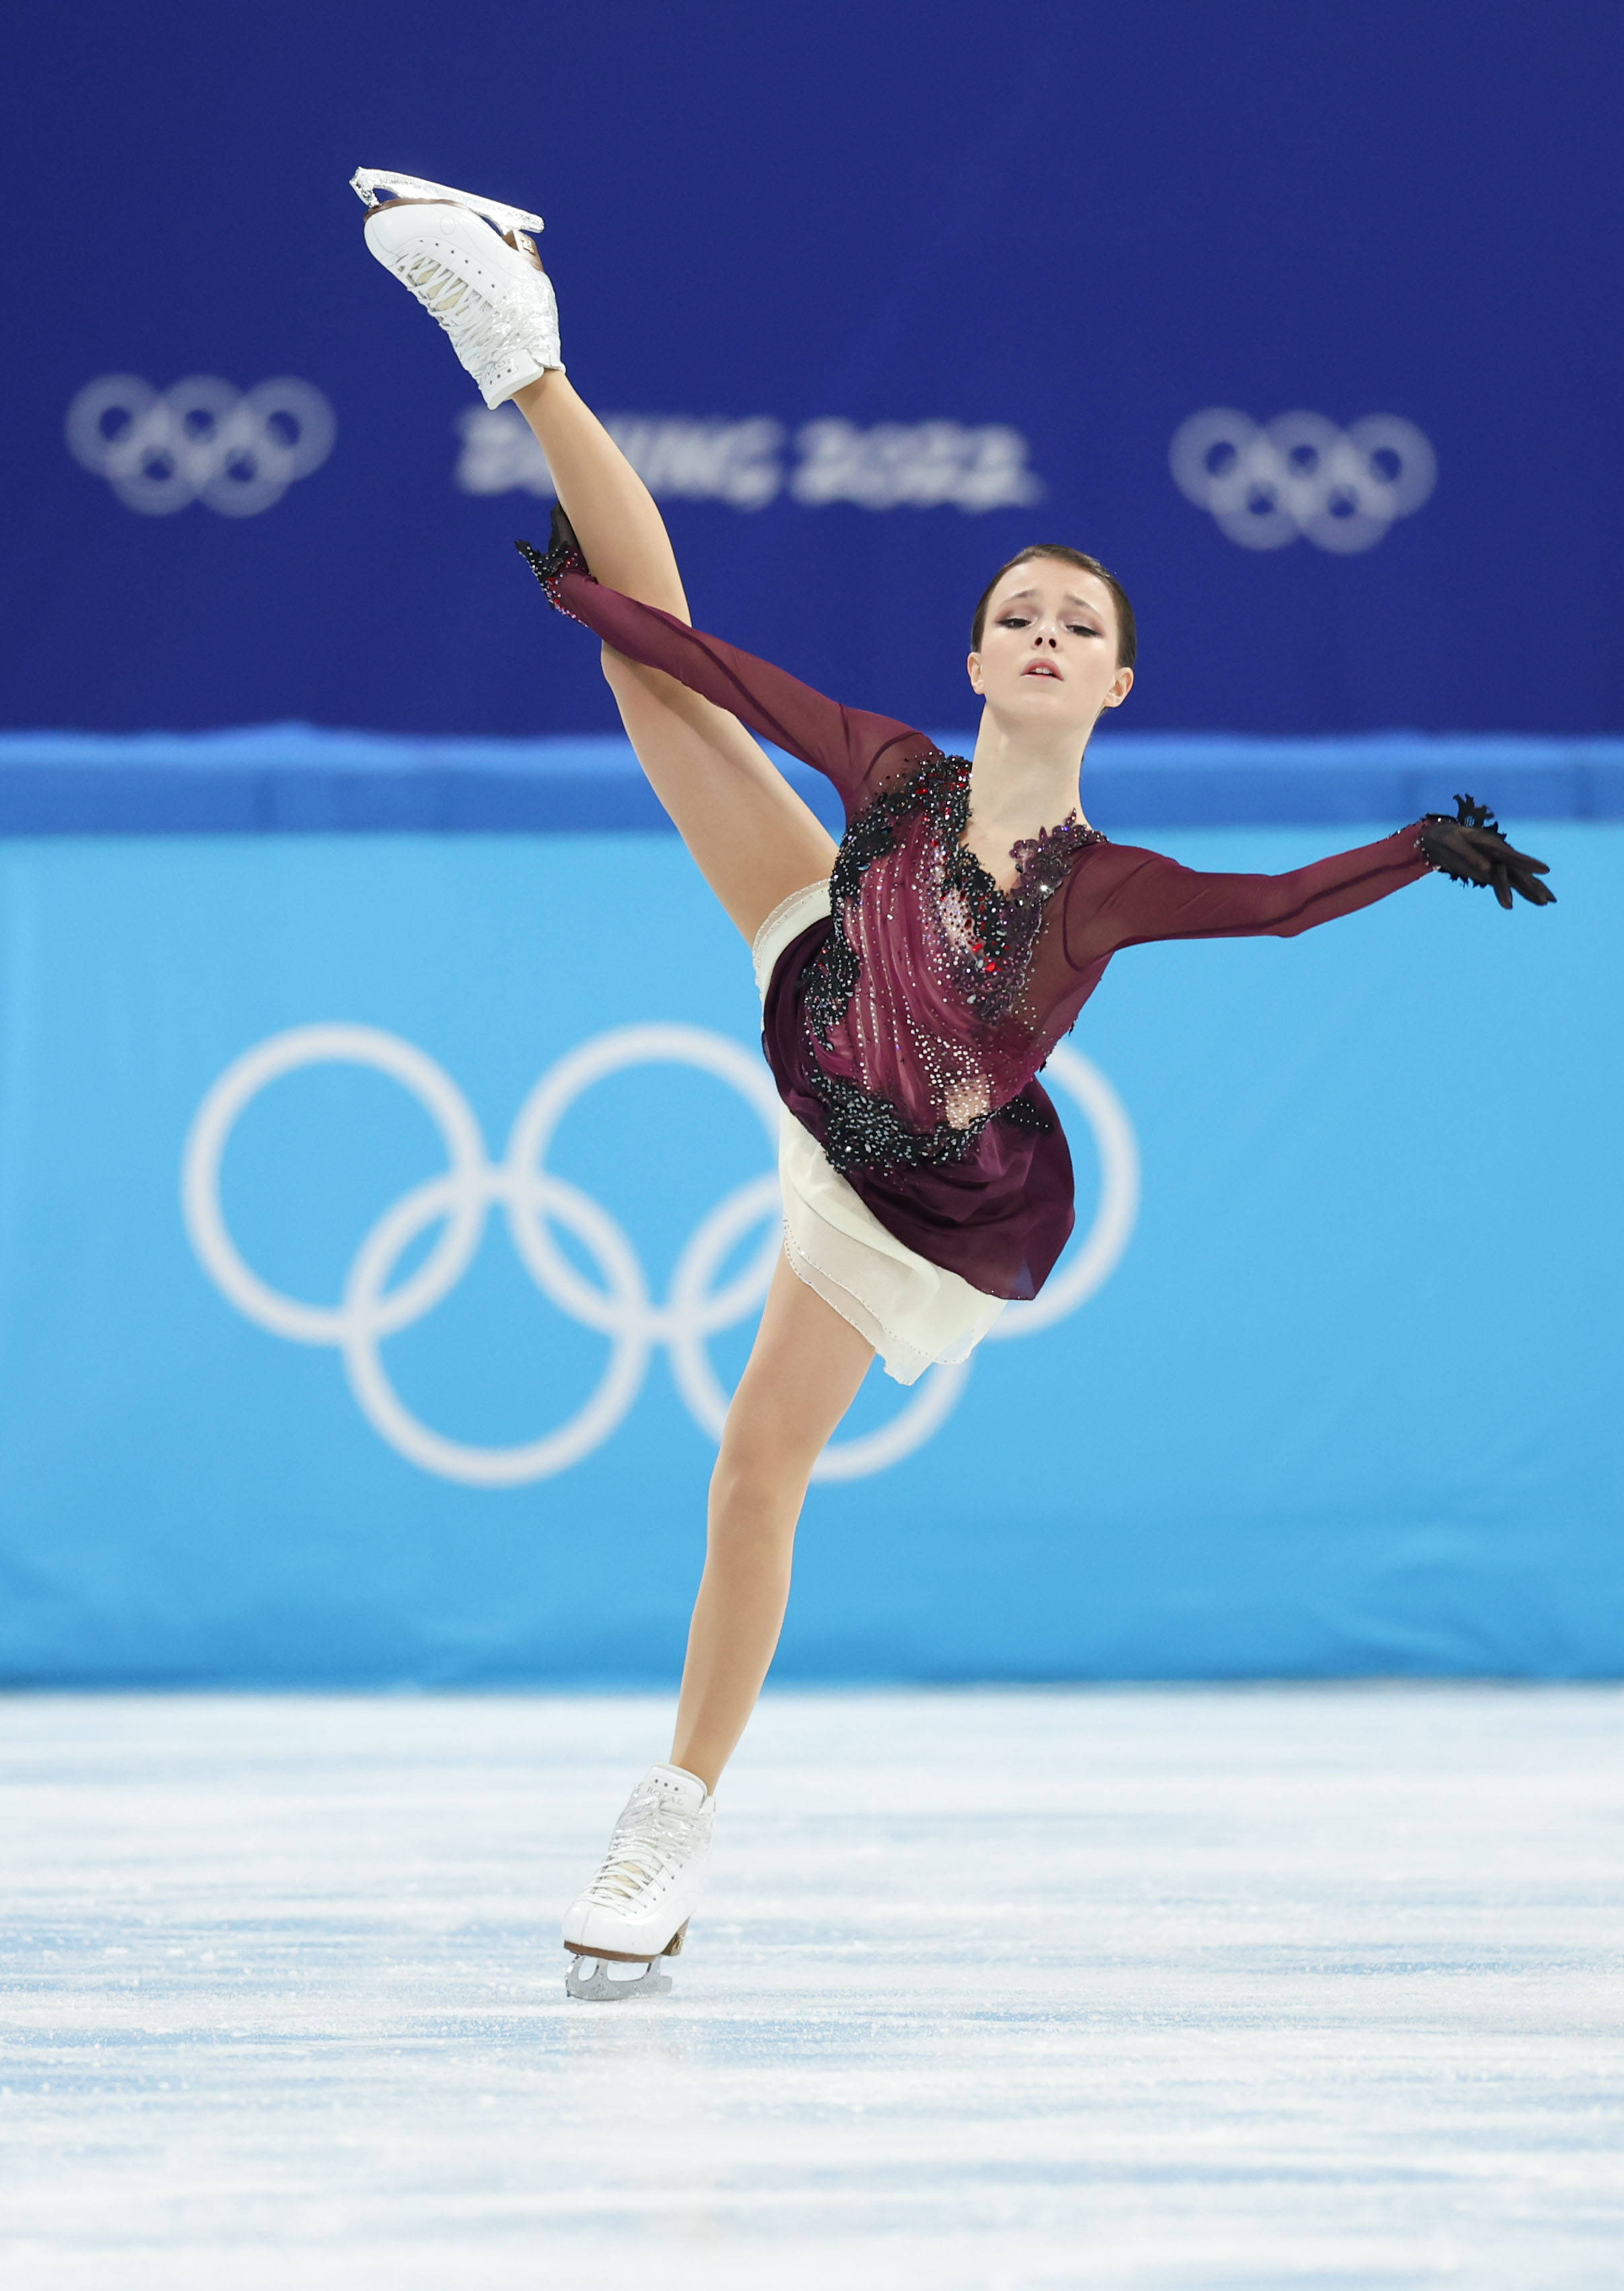 花样滑冰女子单人滑俄罗斯奥委会选手安娜谢尔巴科娃夺得冠军